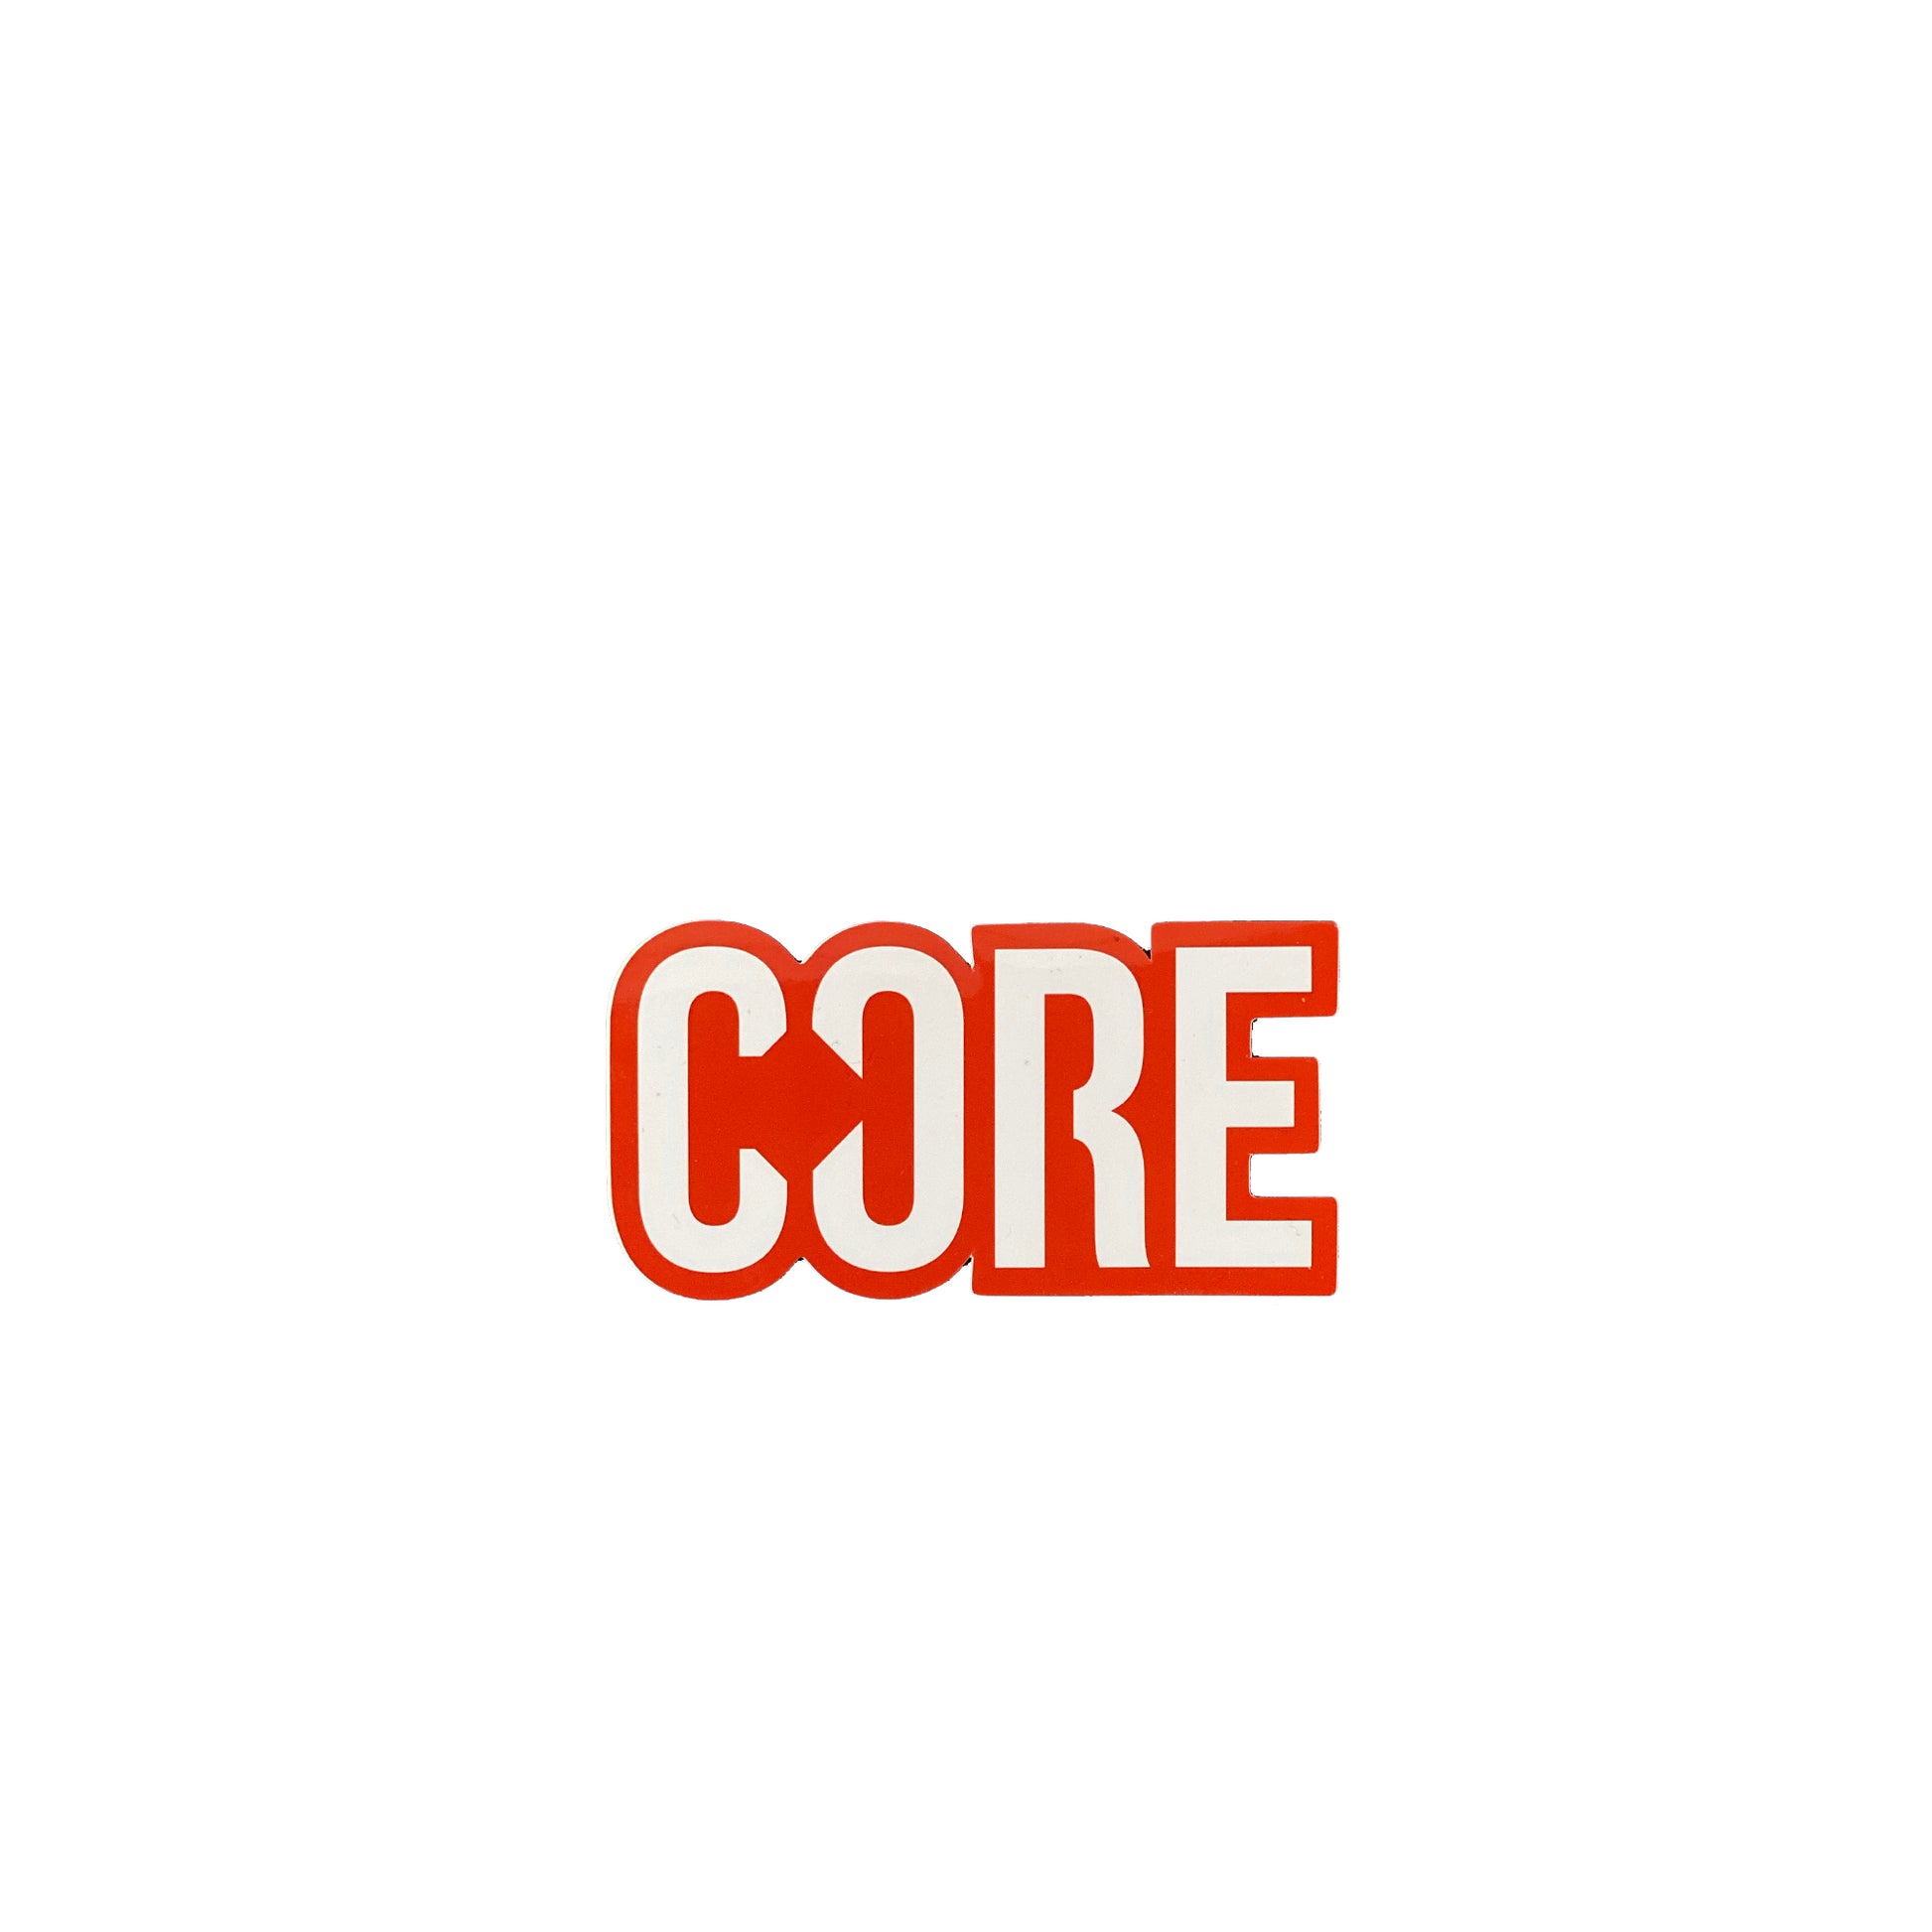 CORE Sticker - Red - Prime Delux Store